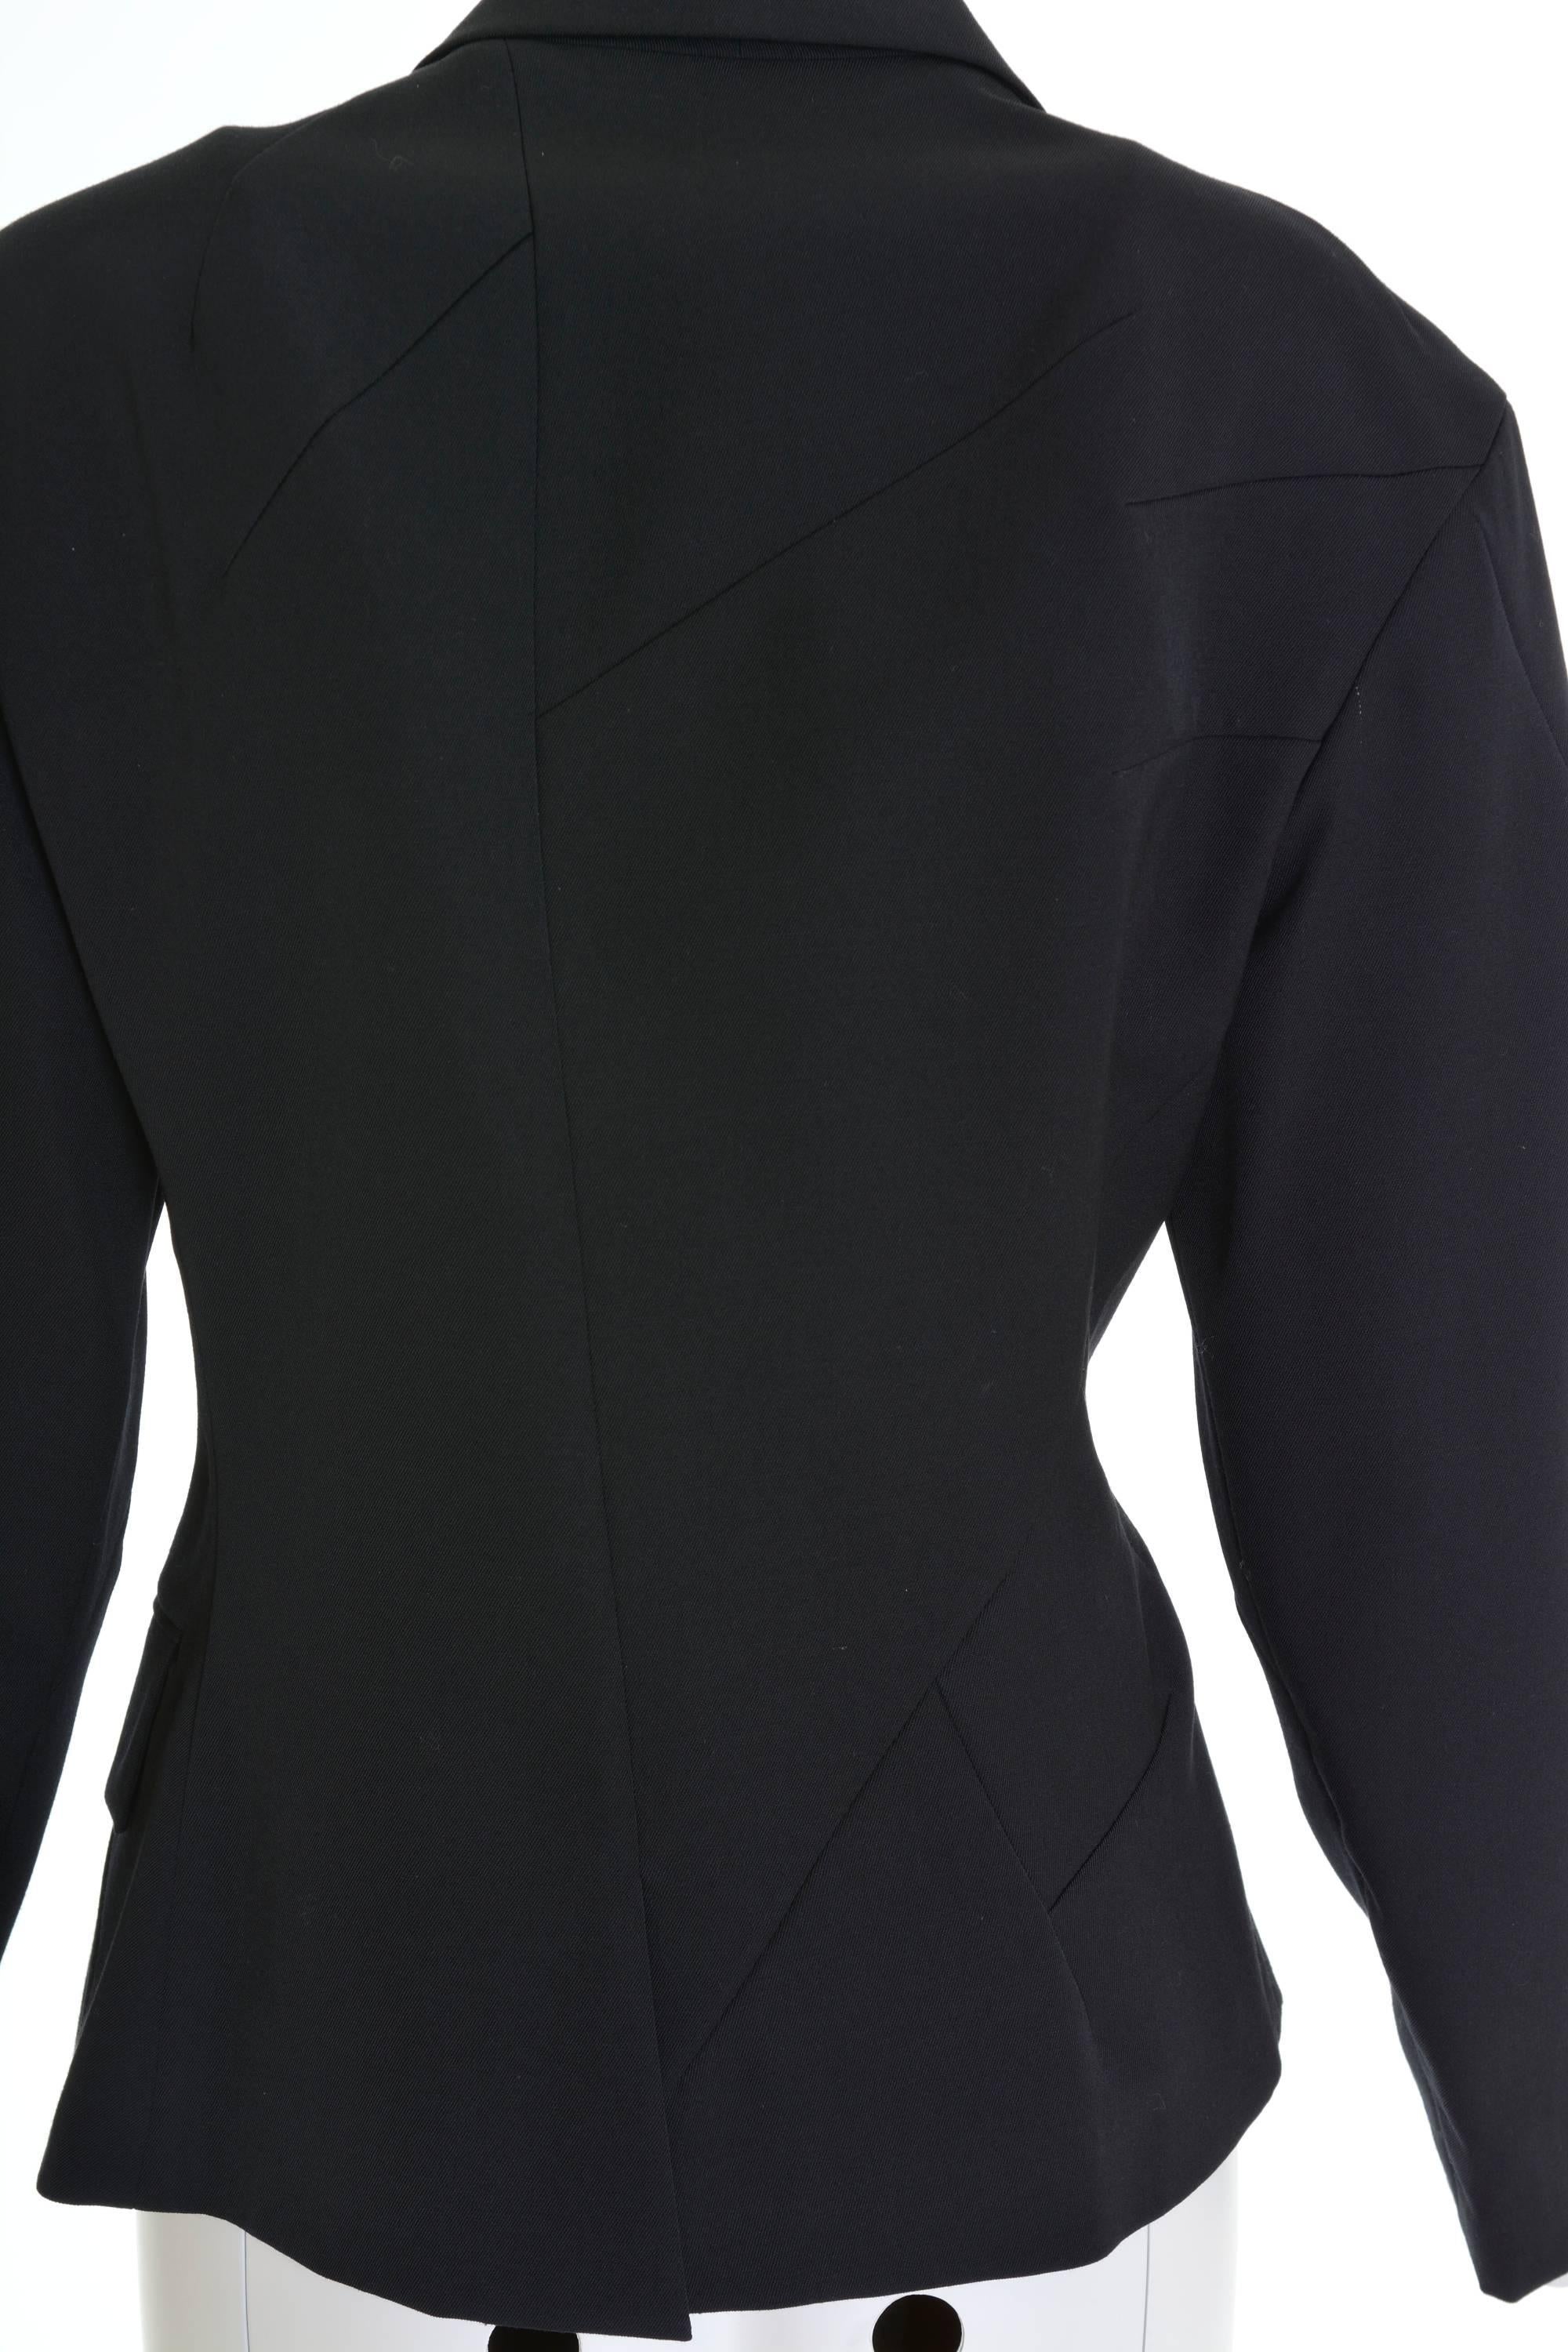 YOHJI YAMAMOTO Black Asymmetric Gabardine Blazer Jacket For Sale 1